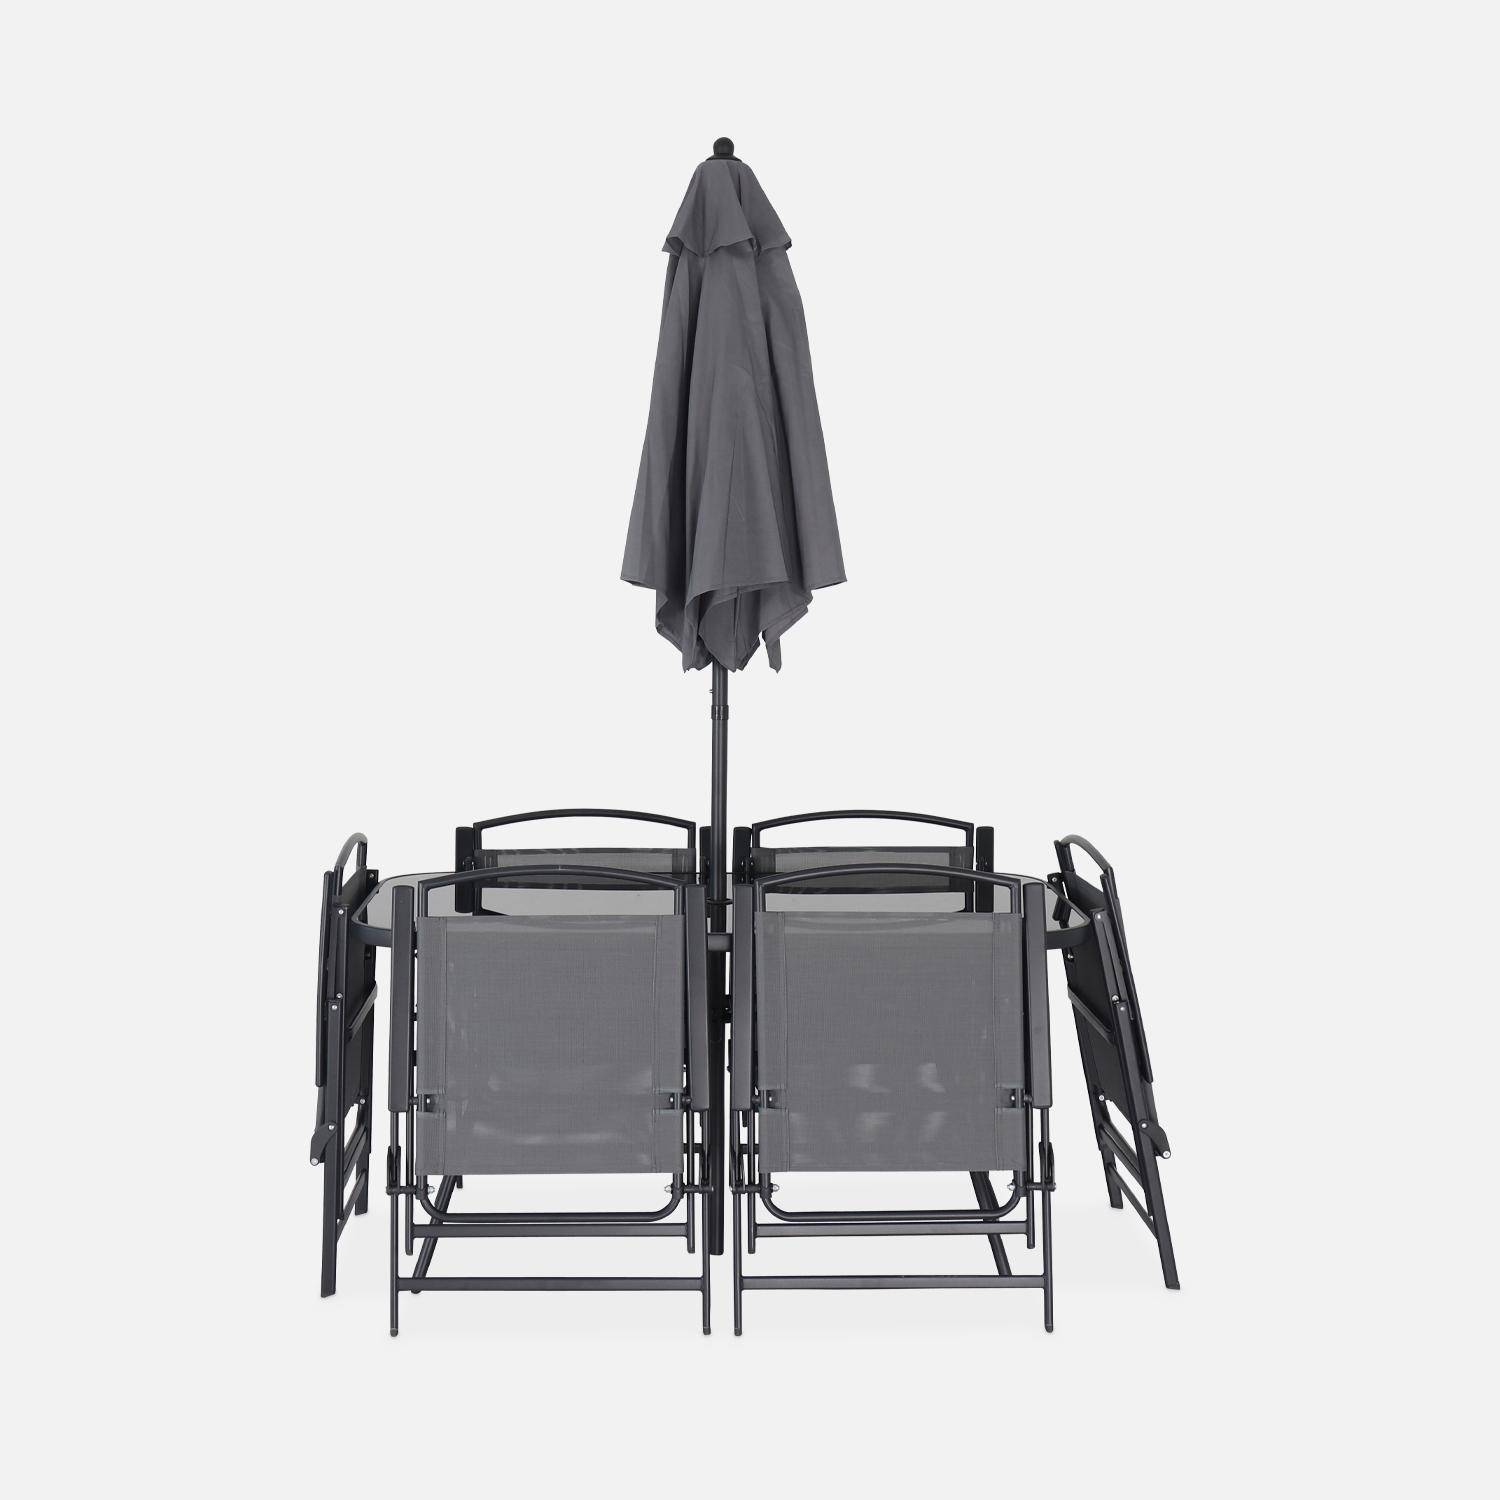 Table de jardin avec 6 fauteuils pliants gris et un parasol 2m, anthracite, structure acier avec revêtement anti rouille Photo5